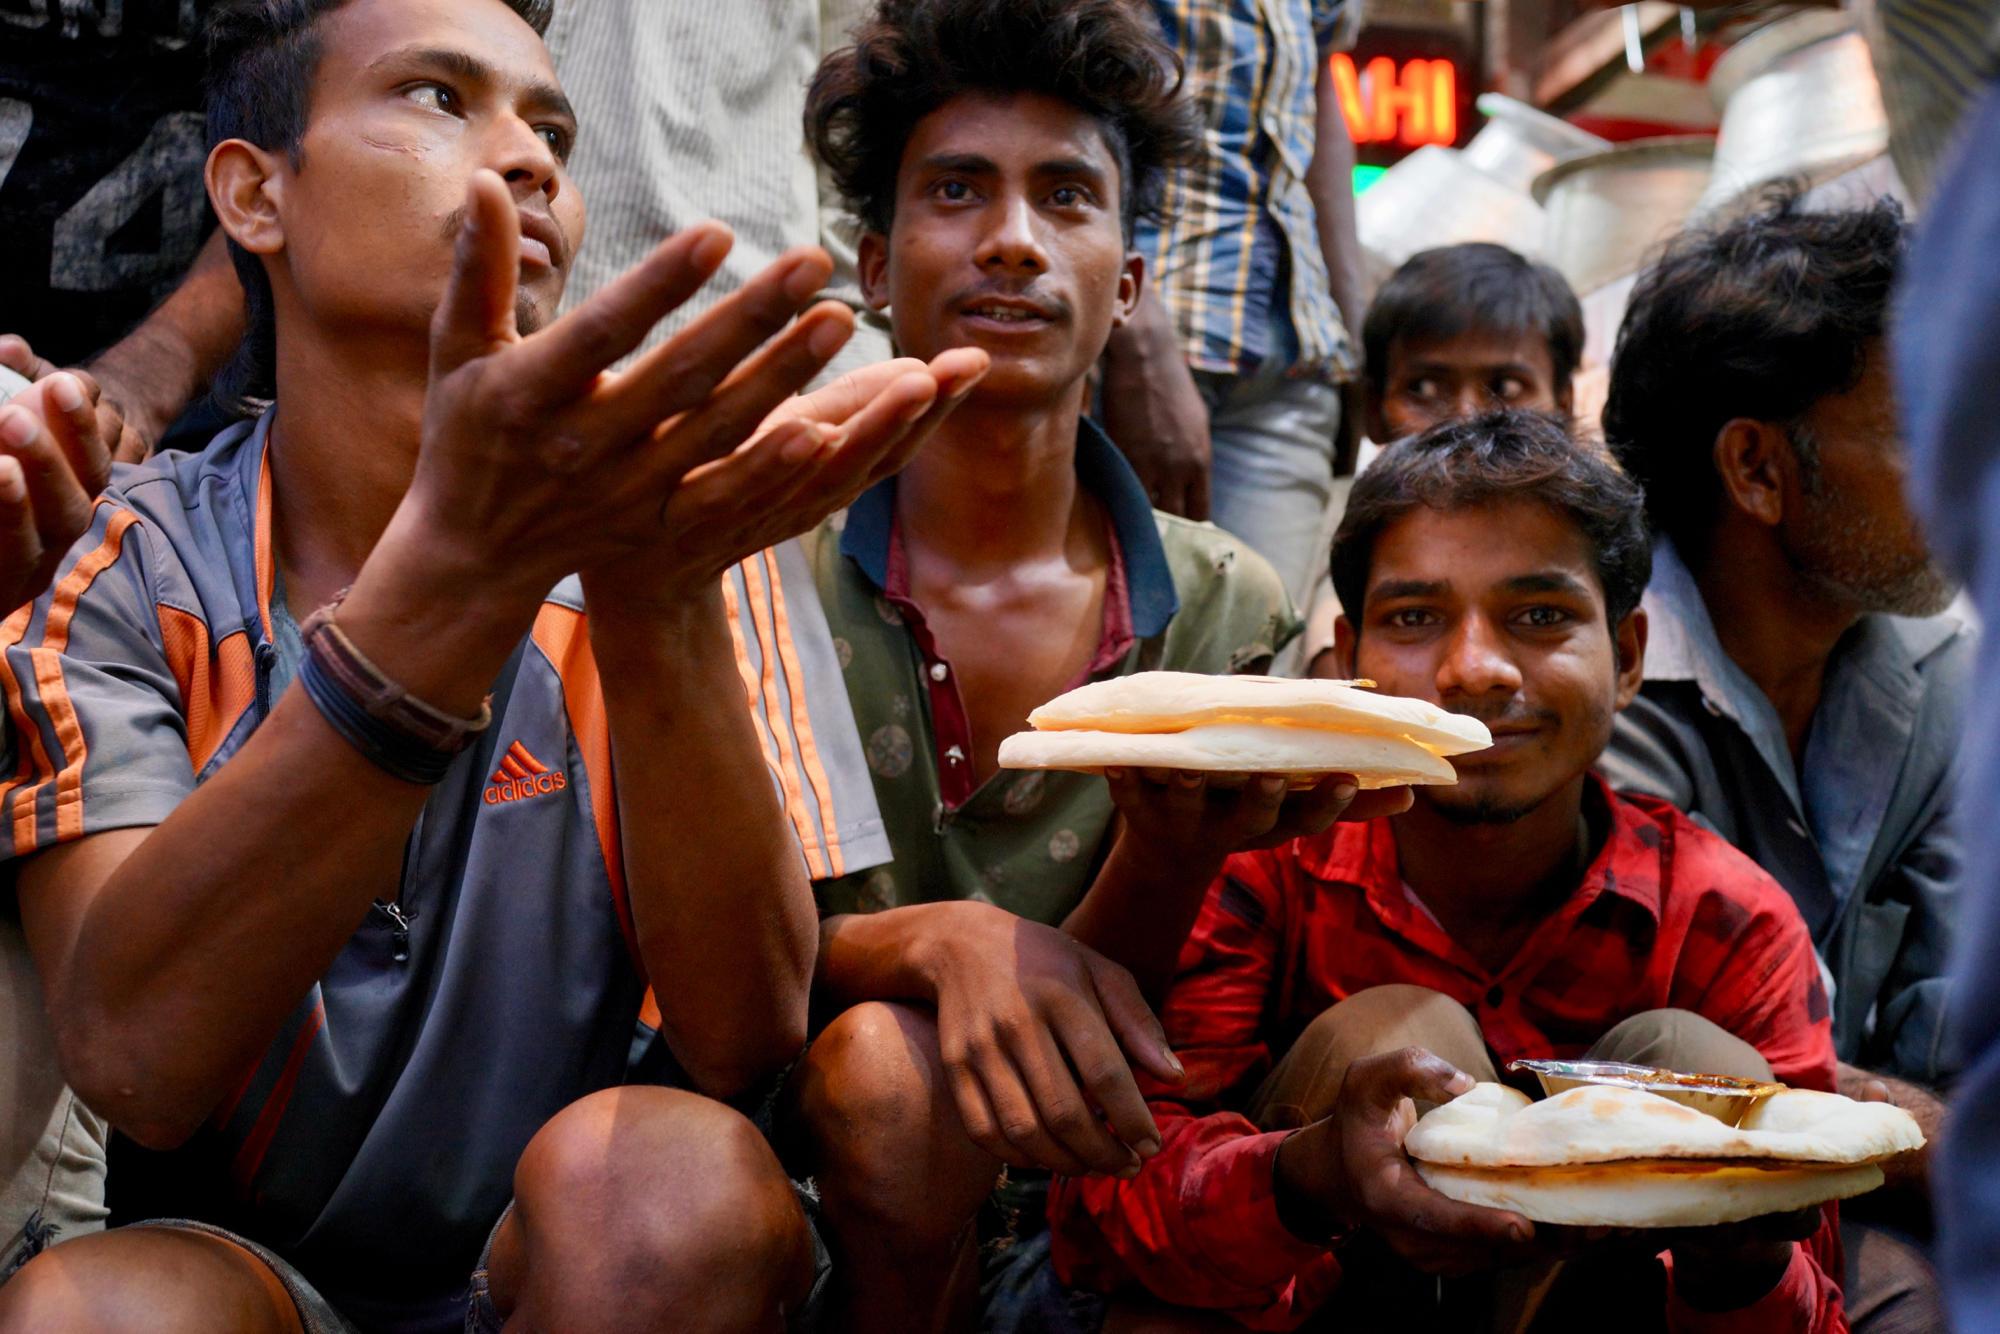 吃新鲜健康的绿色沙拉的印度老人 库存图片. 图片 包括有 圆白菜, 成人, 男人, 制动手, 印第安语 - 195343059